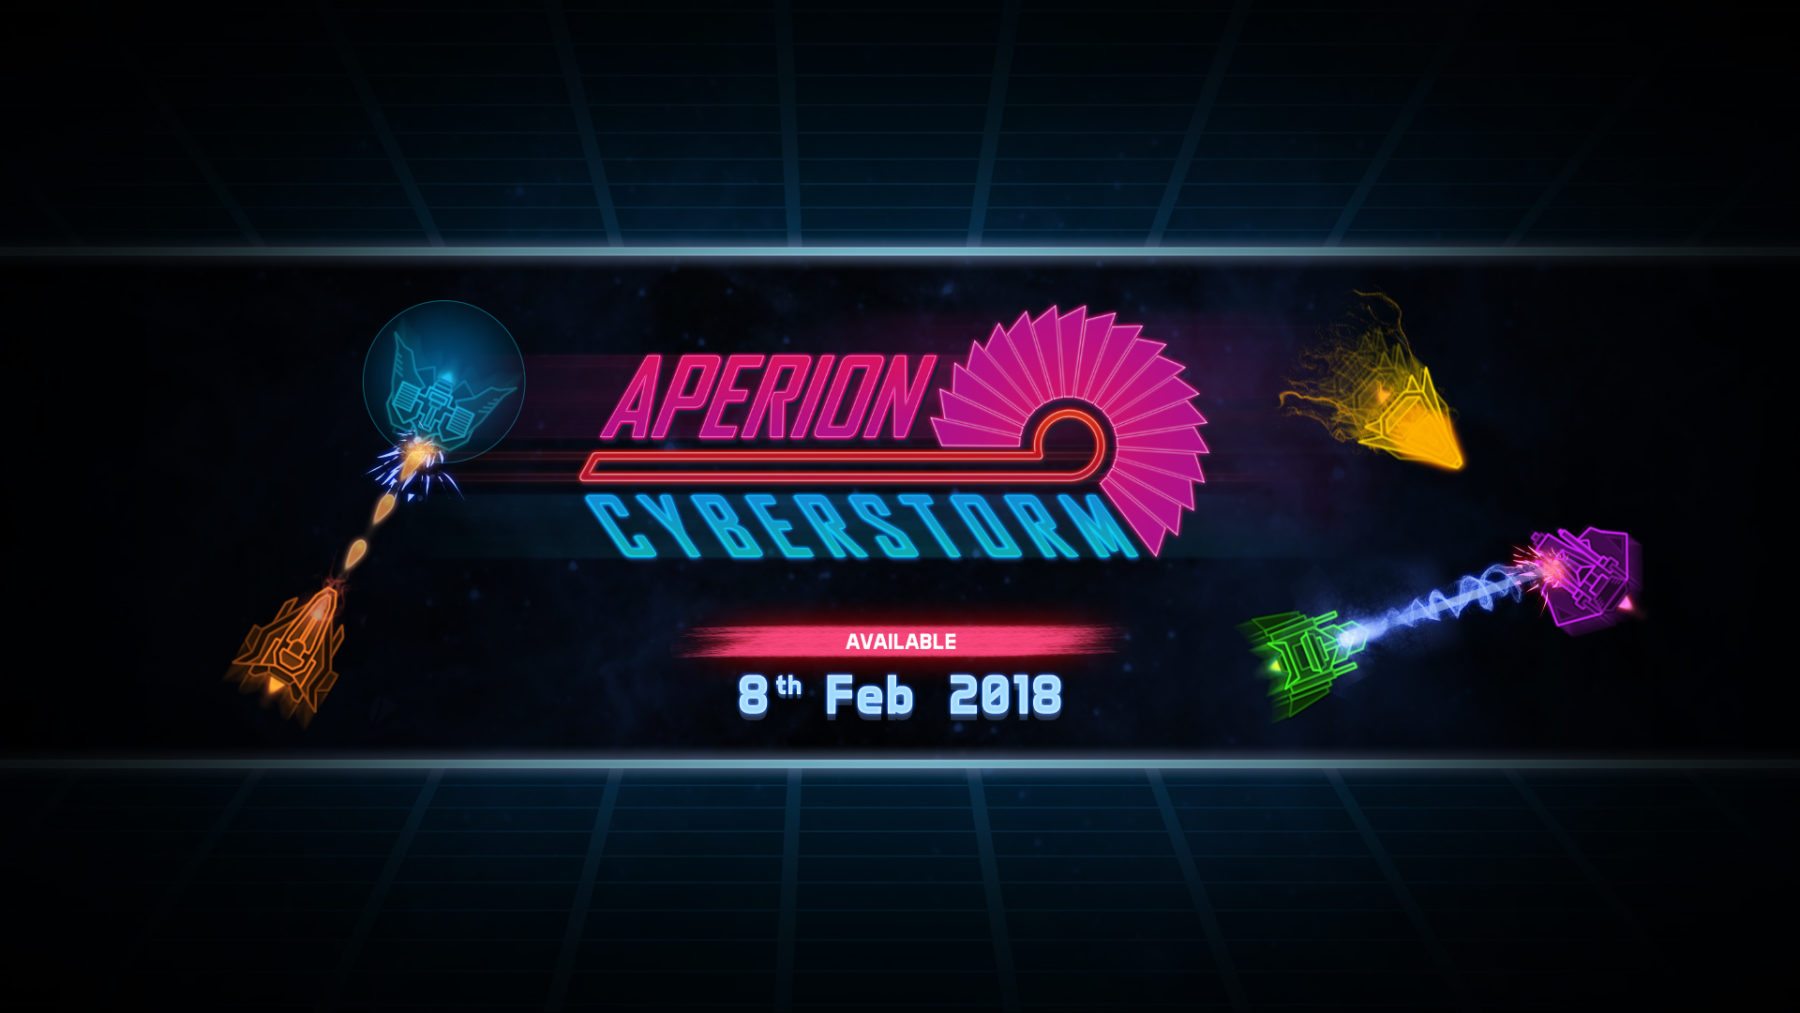 El tirador de doble palo Aperion Cyberstorm tiene fecha de lanzamiento y tráiler